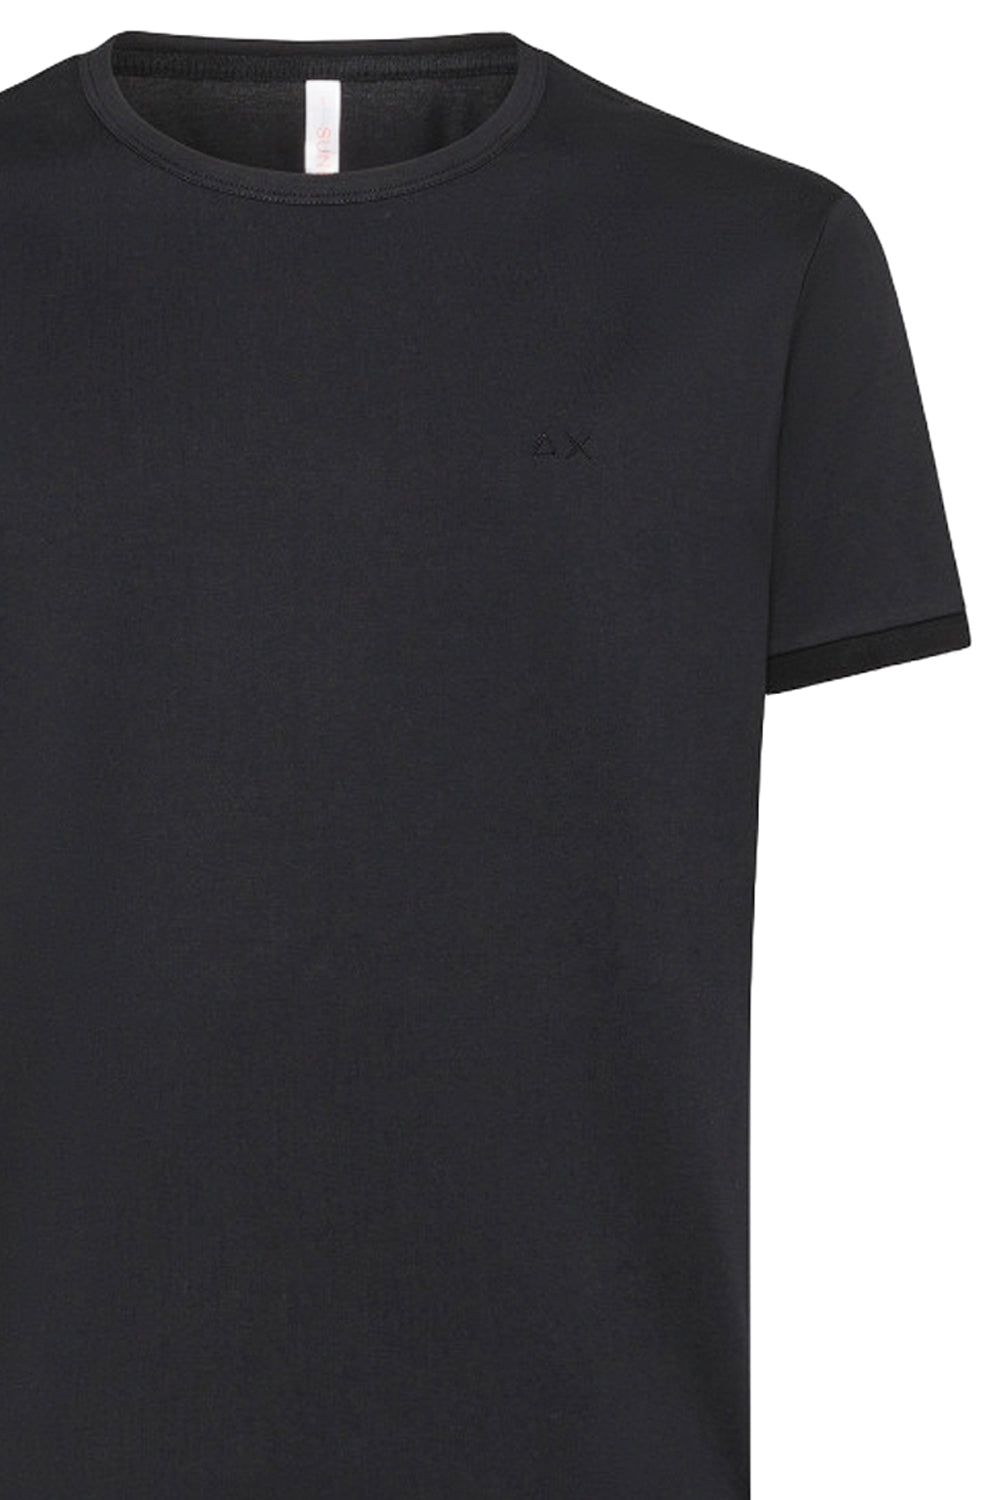 SUN 68 T-shirt in cotone